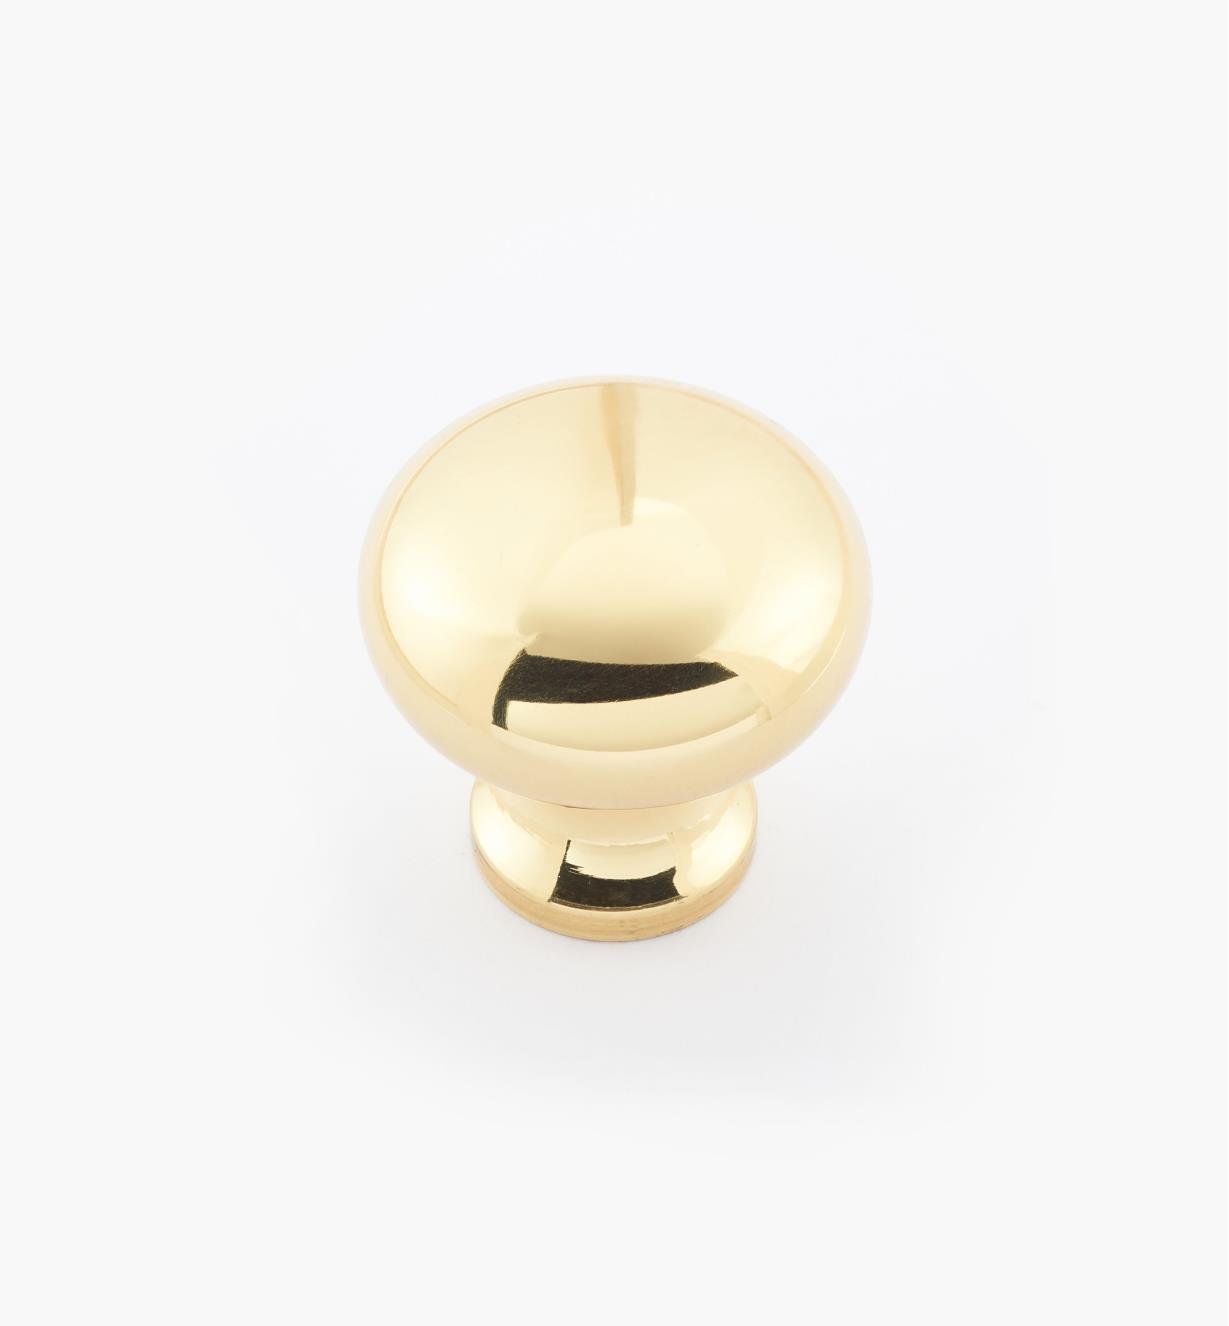 02W1403 - 1" × 1" Round Brass Knob, Polished Brass